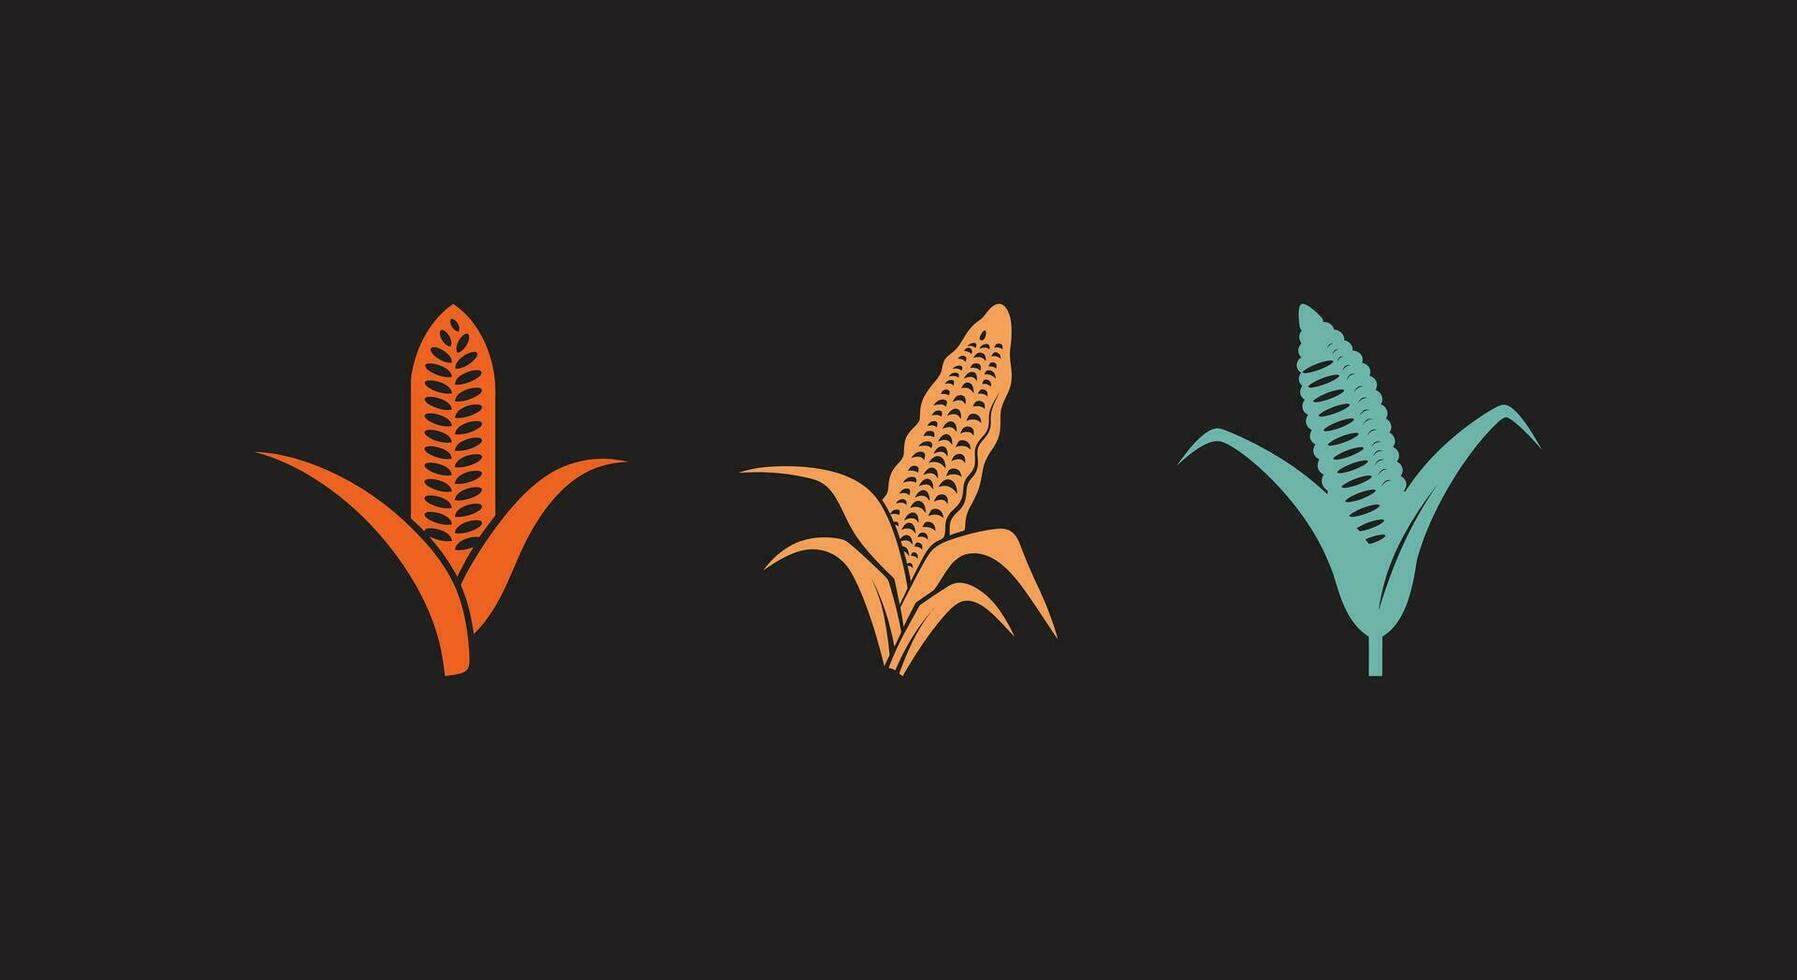 sädesfält magi nyckfull vektor grafik av majs växter i en fantasi miljö